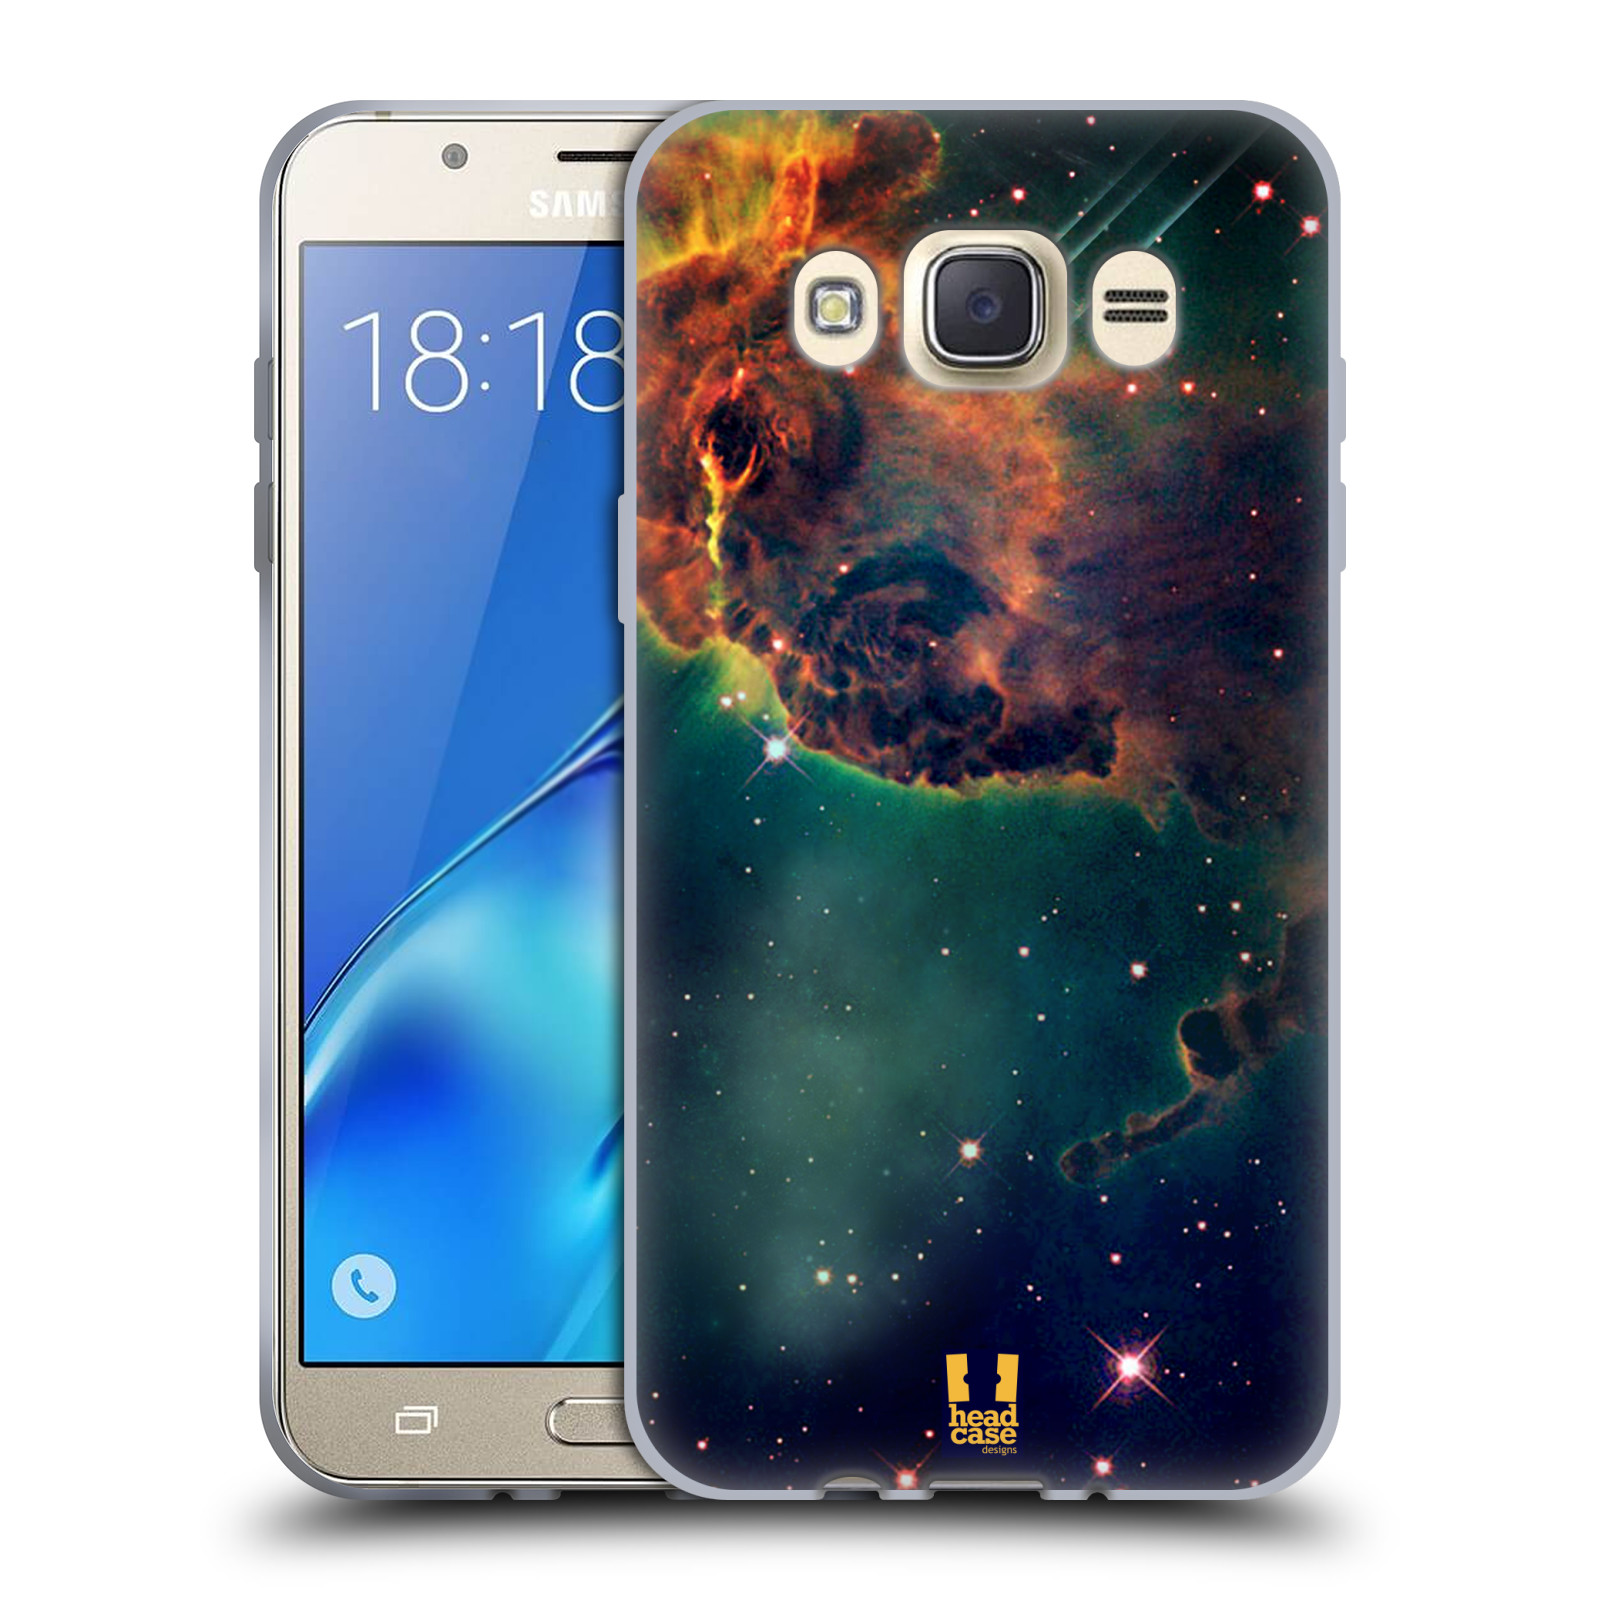 HEAD CASE silikonový obal, kryt na mobil Samsung Galaxy J7 2016 (J710, J710F) vzor Vesmírná krása MLHOVINA